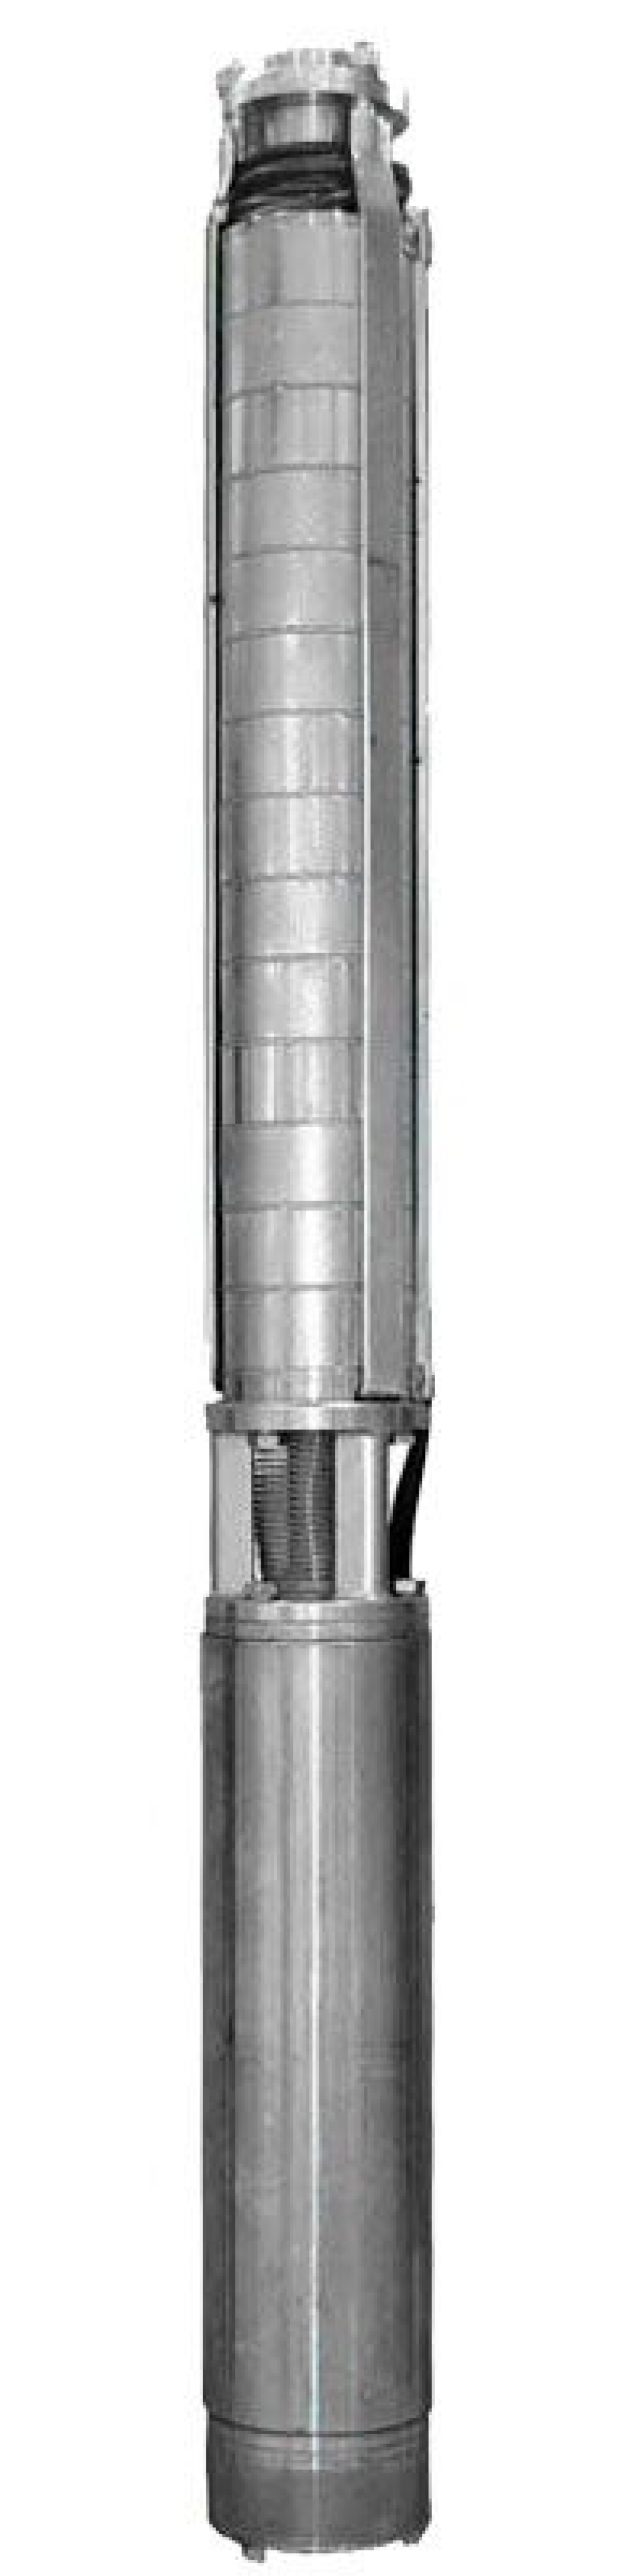 Насос скважинный Ливнынасос ЭЦВ 4-10-55 центробежный, производительность 10 м3/час, напор 55 м, мощность 3 кВт, напряжение трехфазной сети 380В